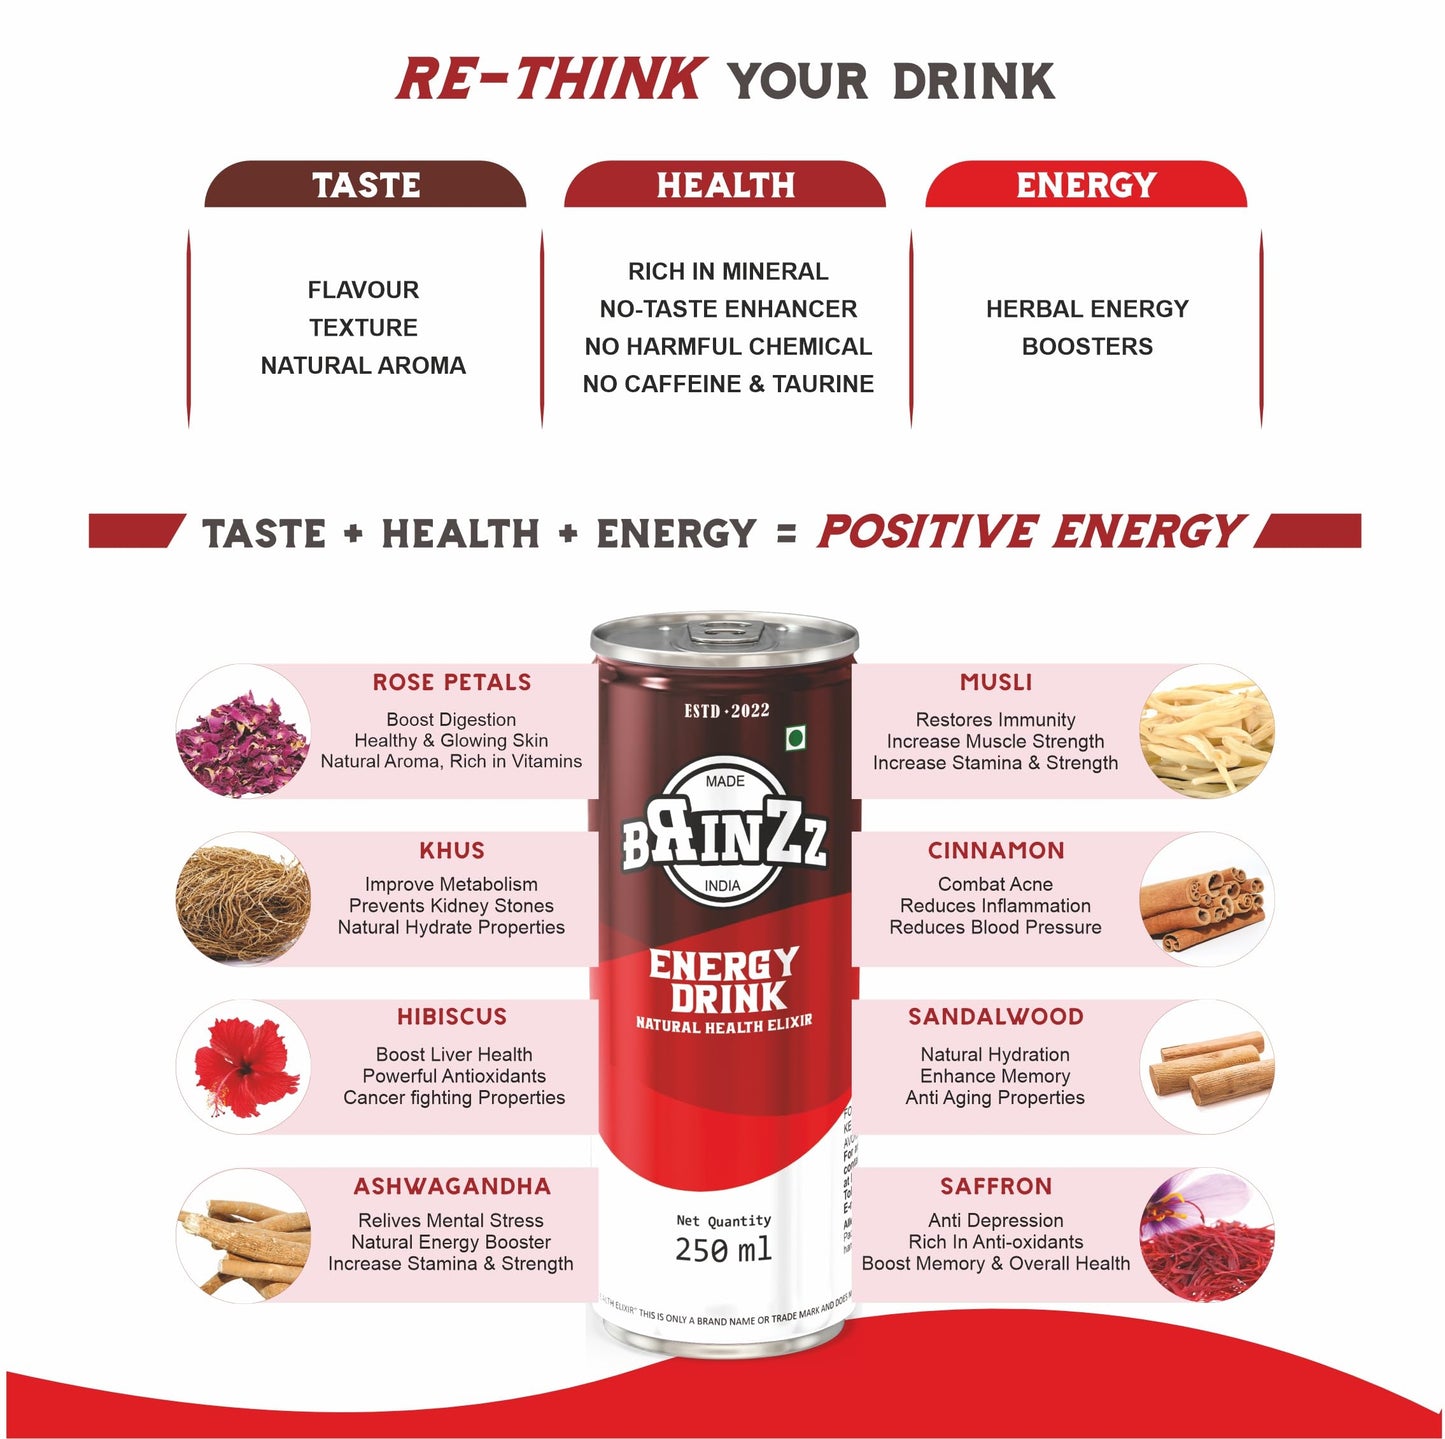 Brinzz Energy Drink Natural Health Elixir 1 Liter (Pack of 4)